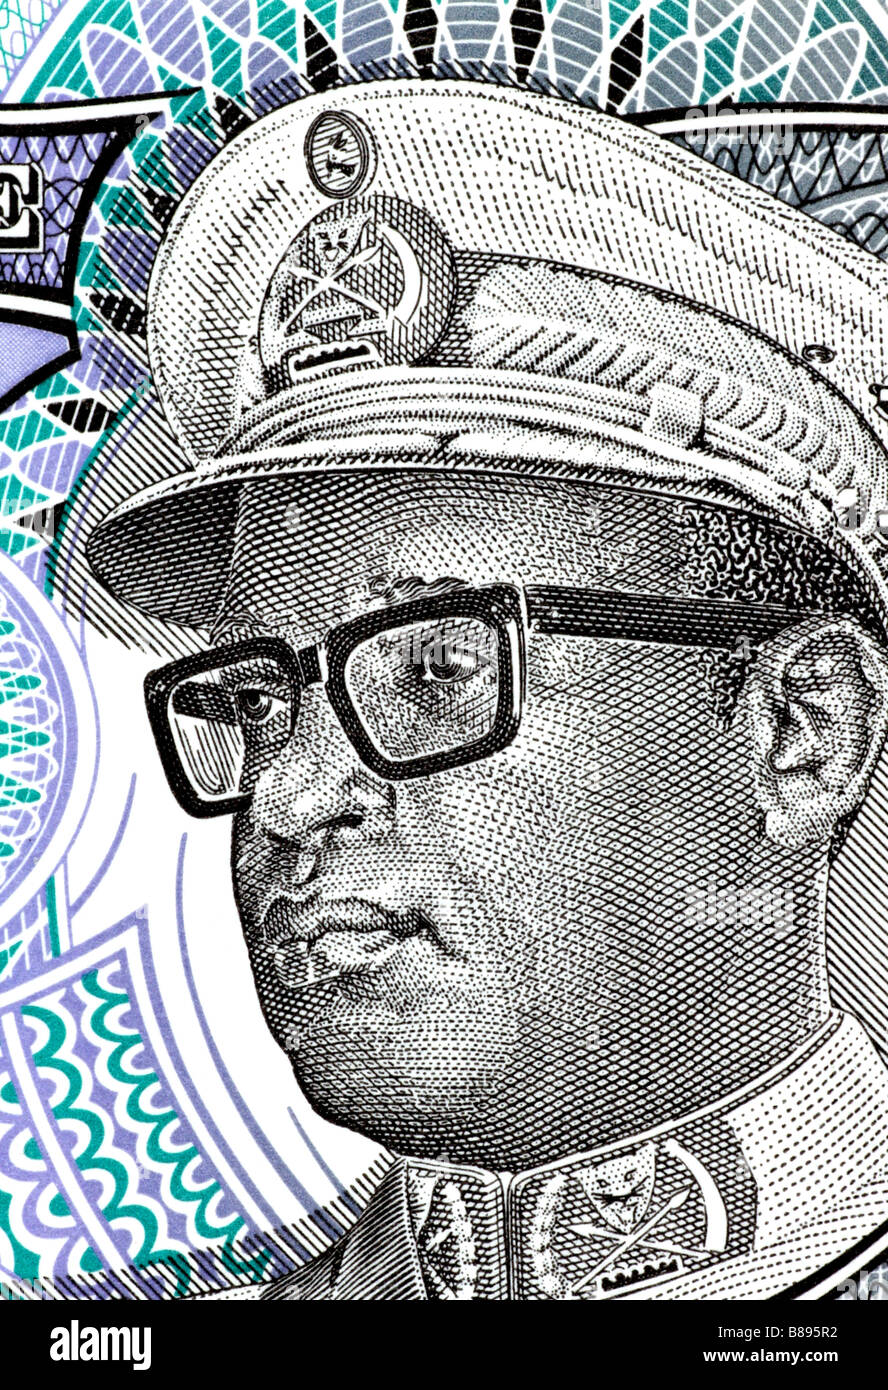 Mobutu Hoare (dragospusca) - Profile